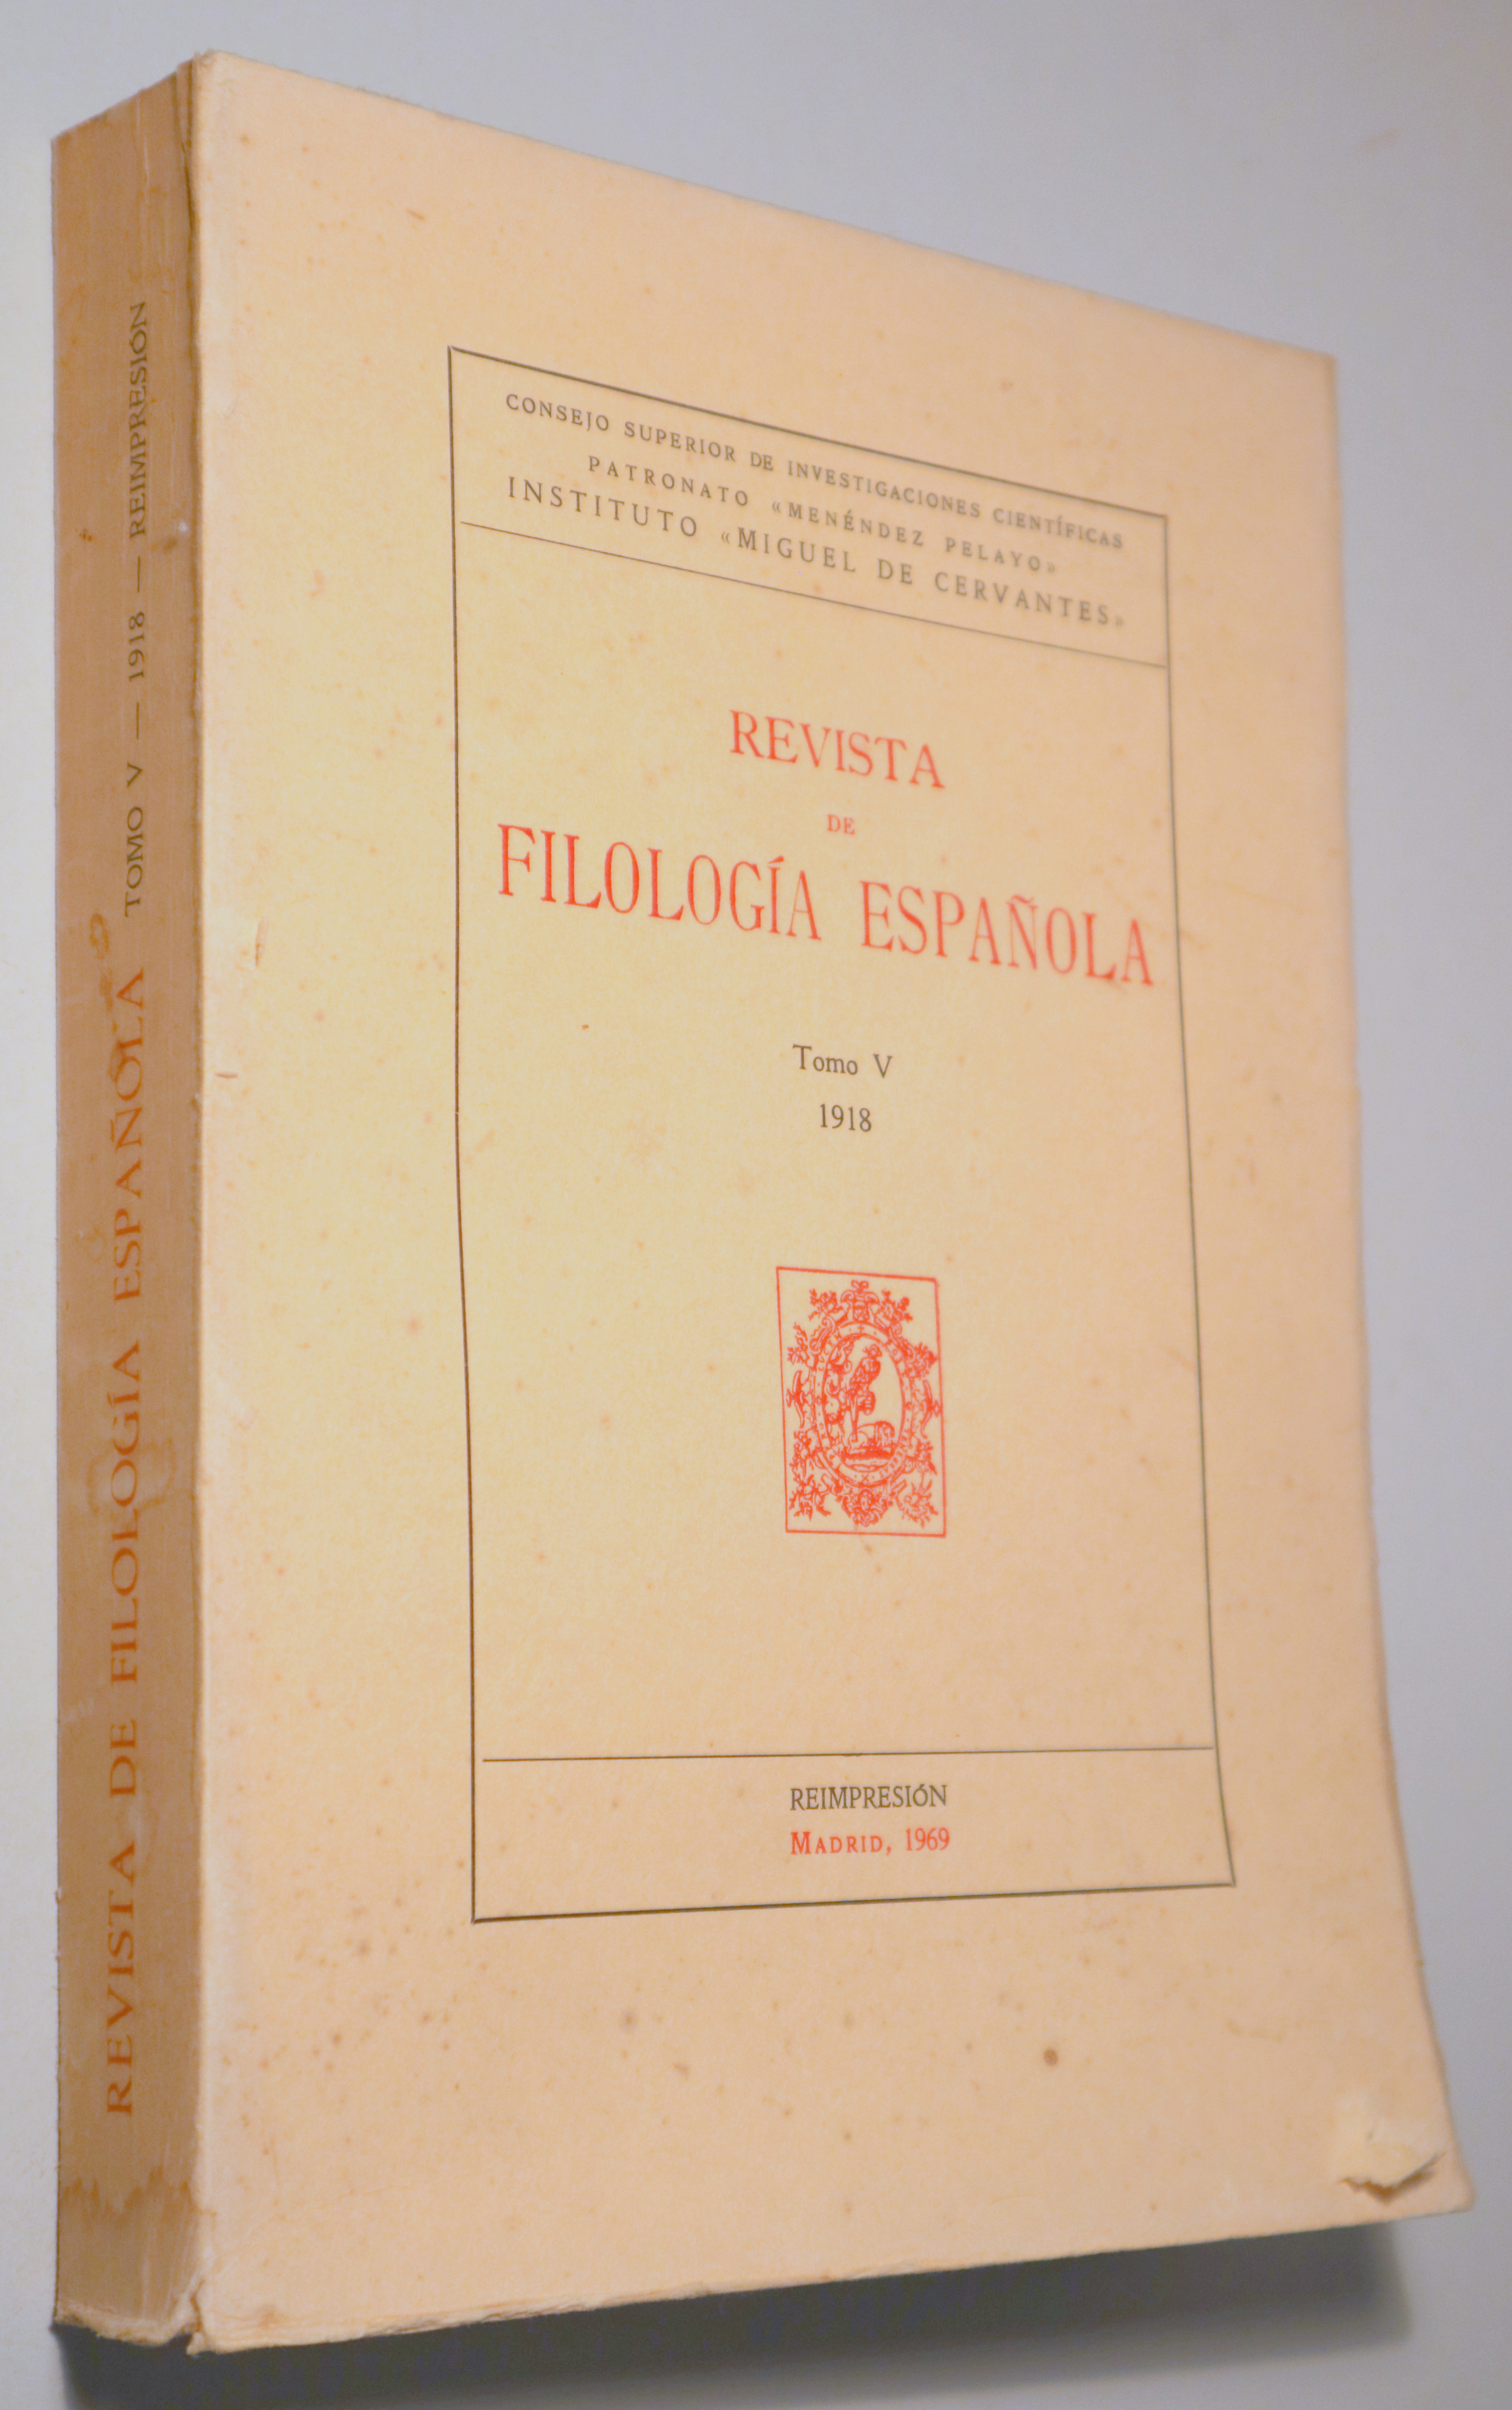 REVISTA DE FILOLOGÍA ESPAÑOLA. Tomo V 1918 - Madrid 1969 - Reimpresión